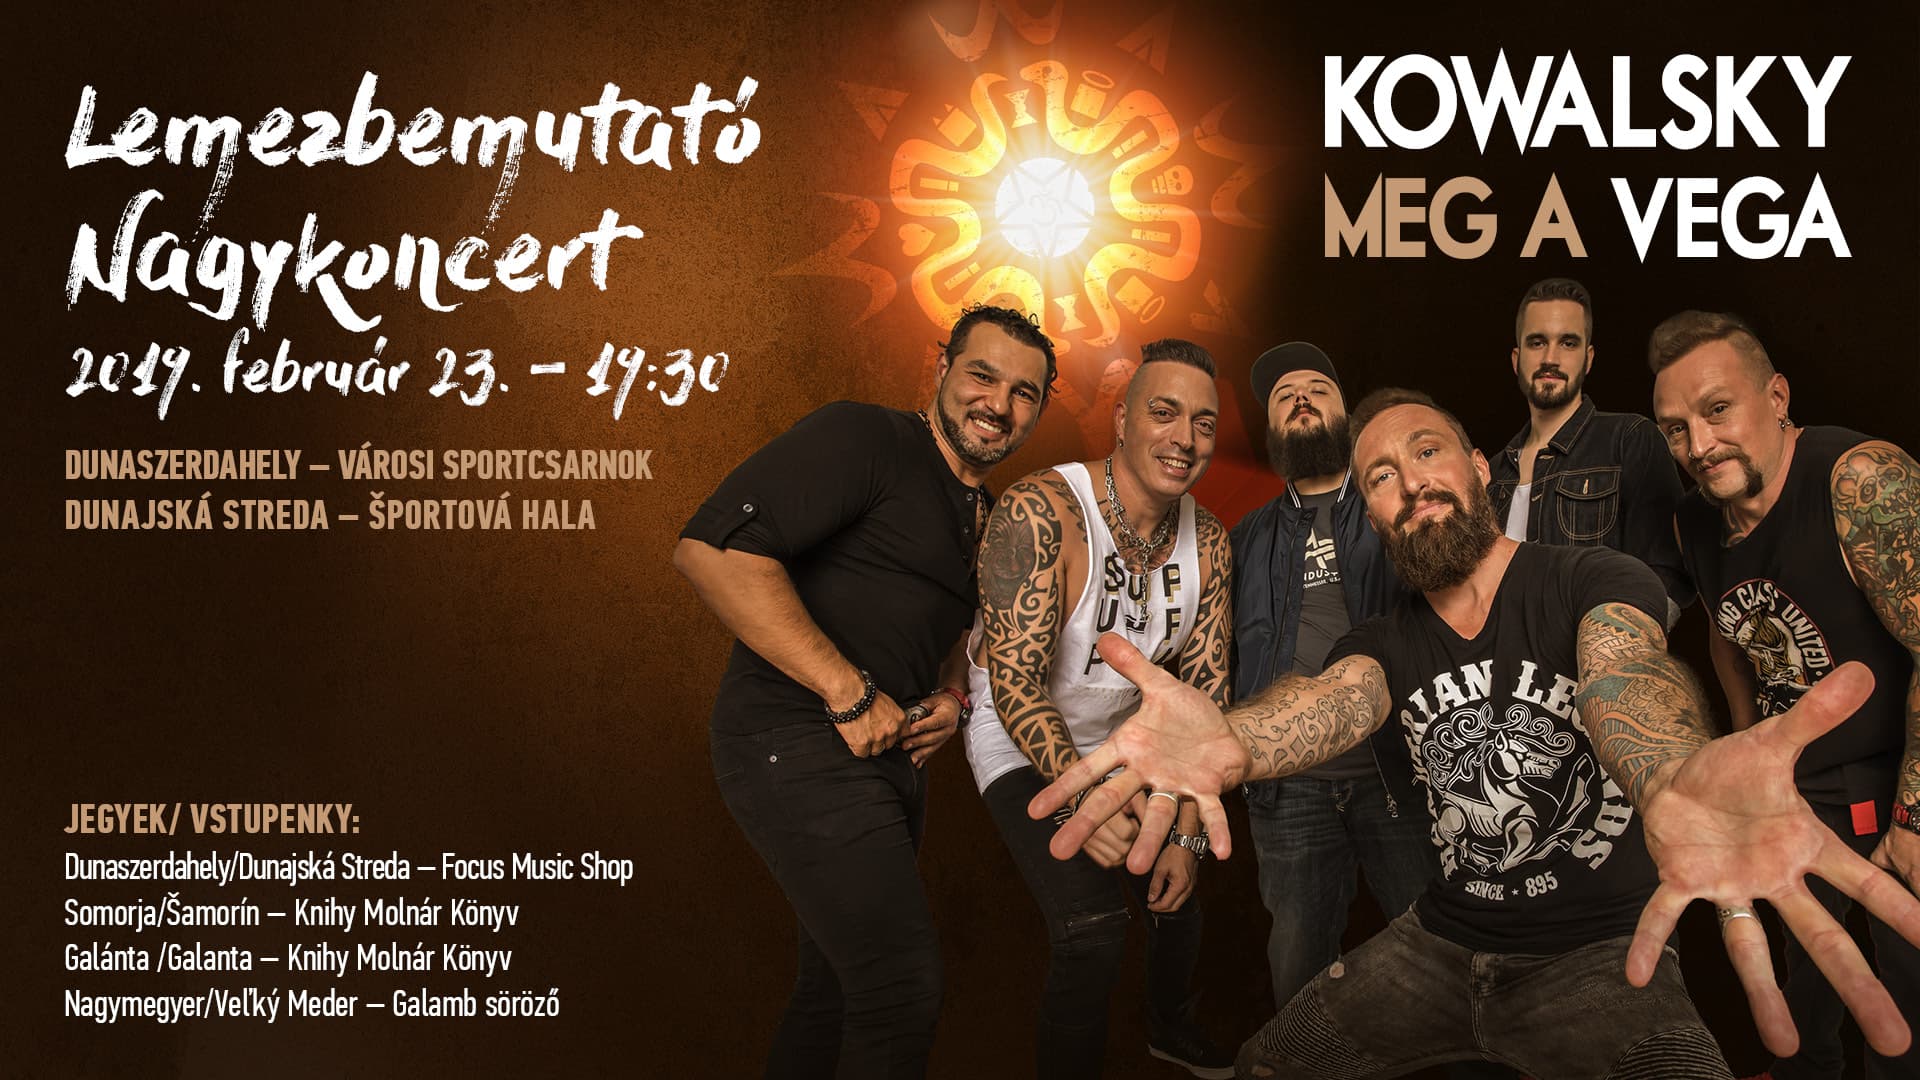 Kowalsky meg a Vega lemezbemutató nagykoncert Dunaszerdahelyen